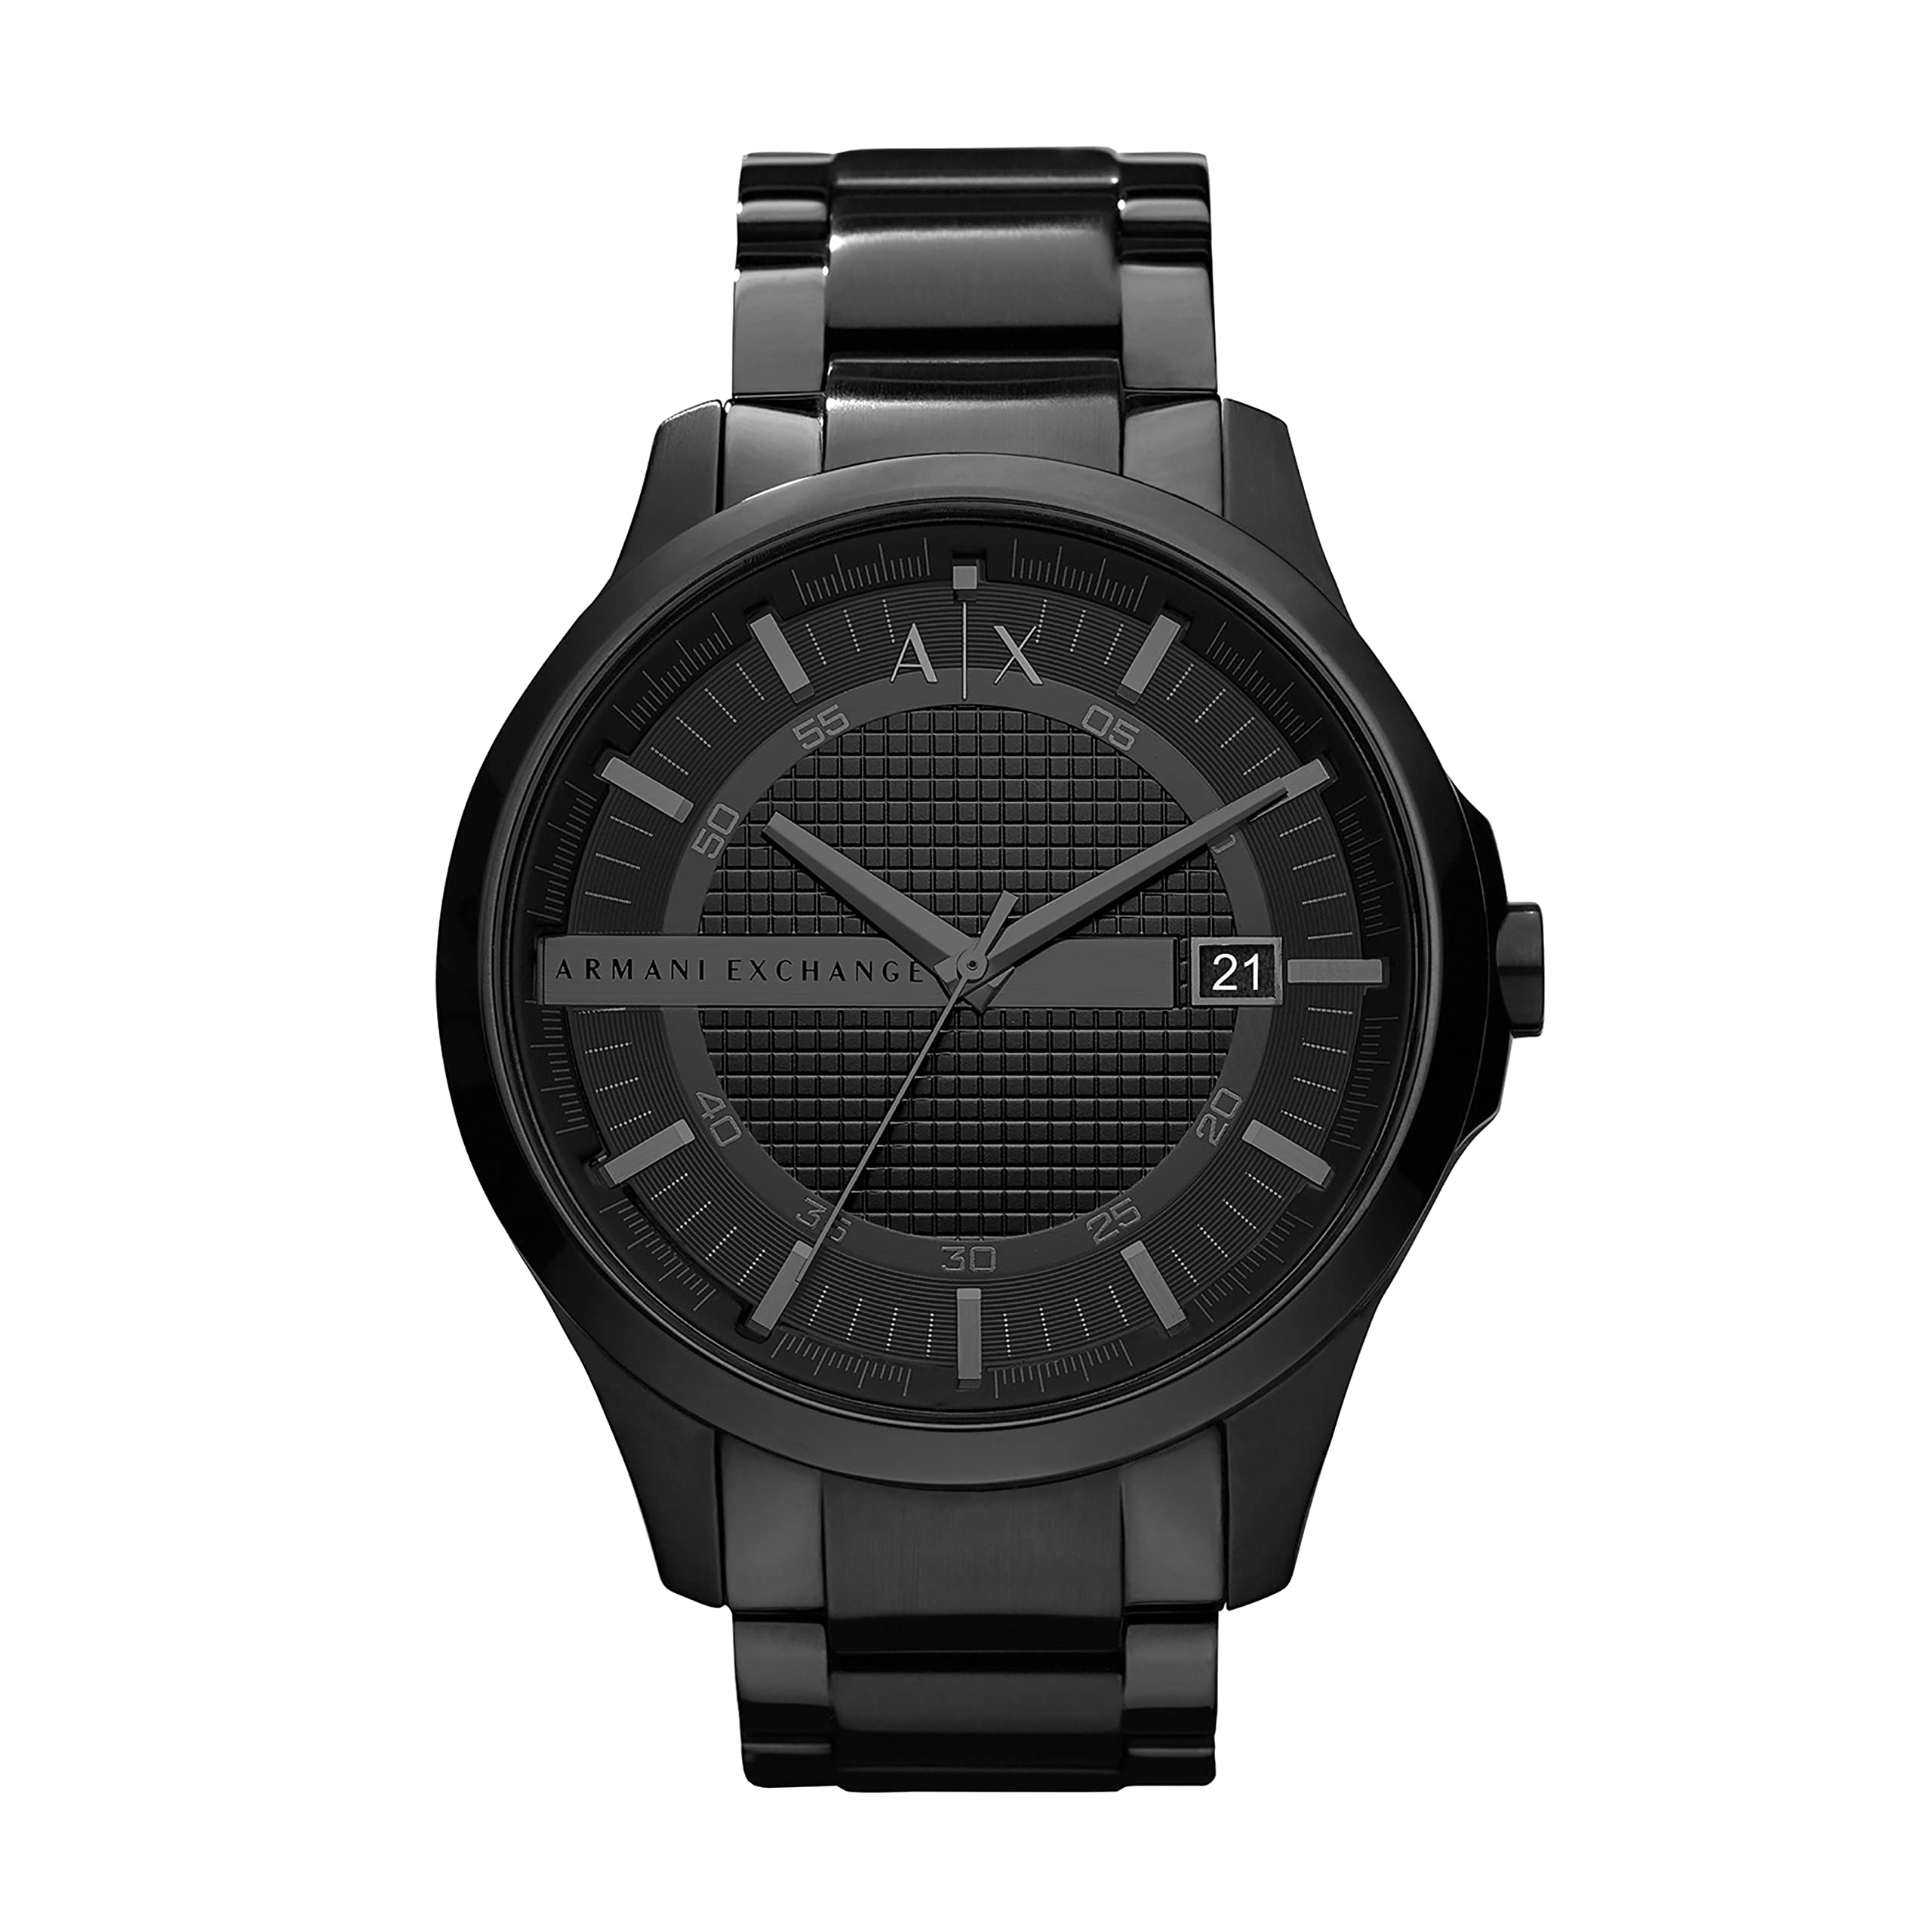 Introducir 76+ imagen armani exchange men’s stainless steel watch